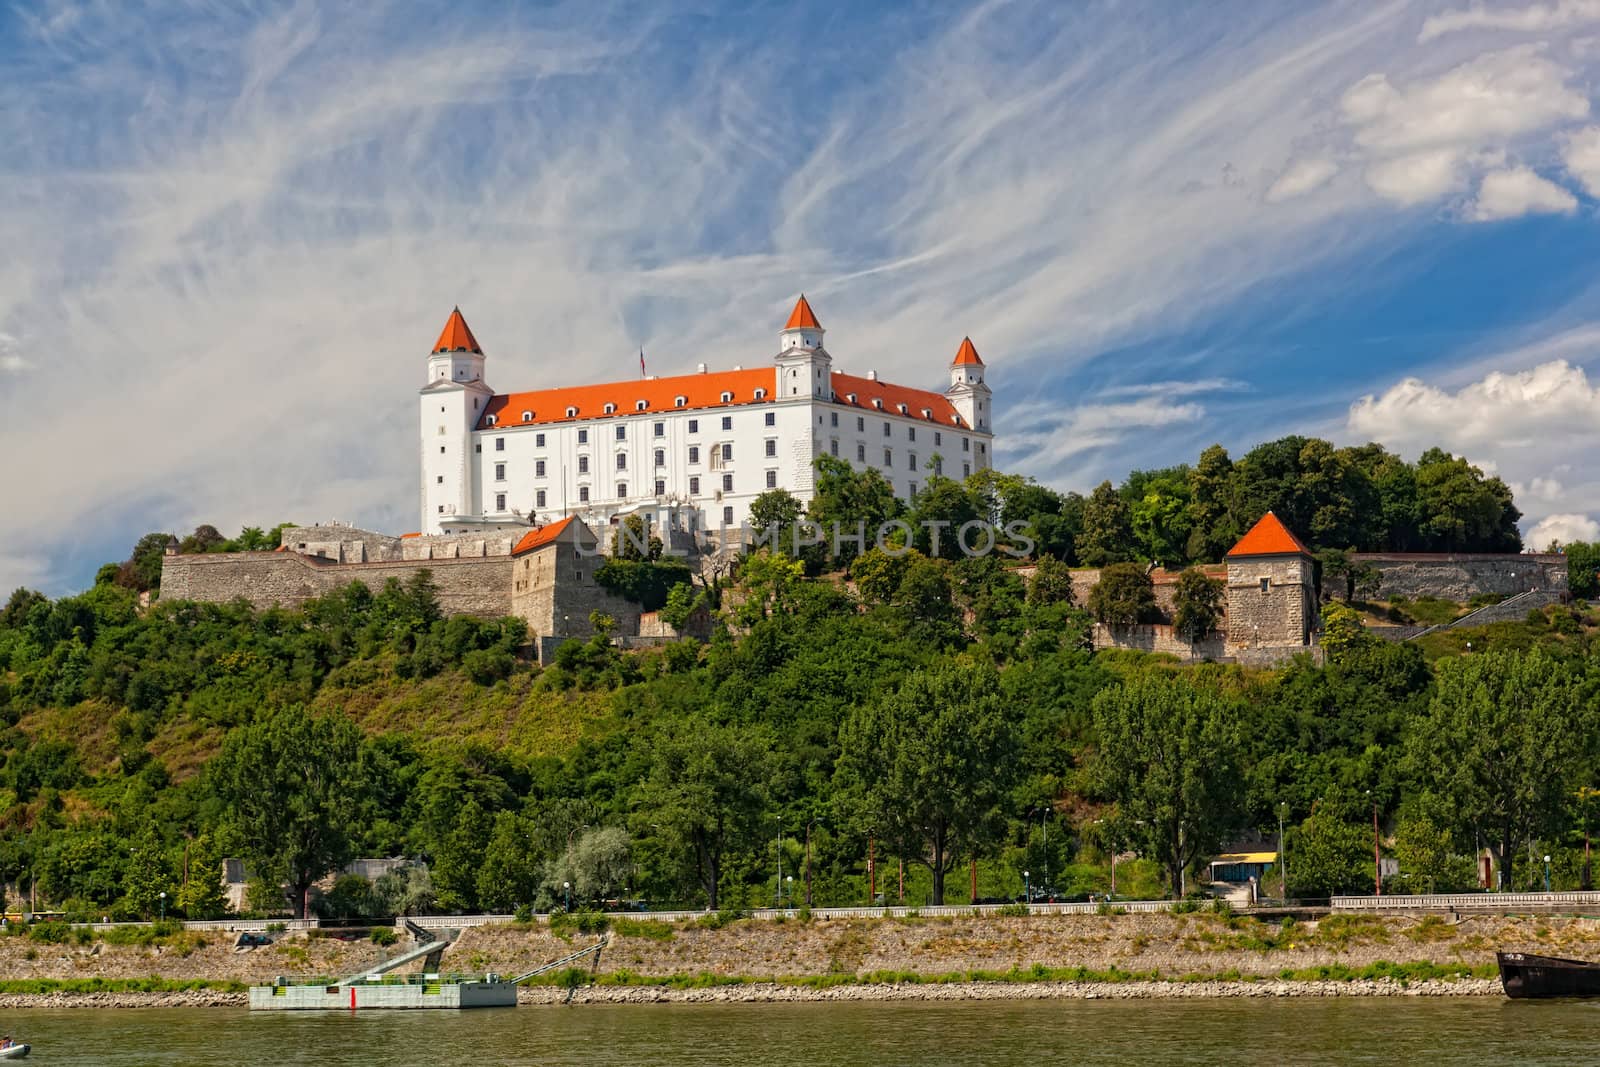 Medieval castle on the hill against the sky, Bratislava, Slovakia by elena_shchipkova